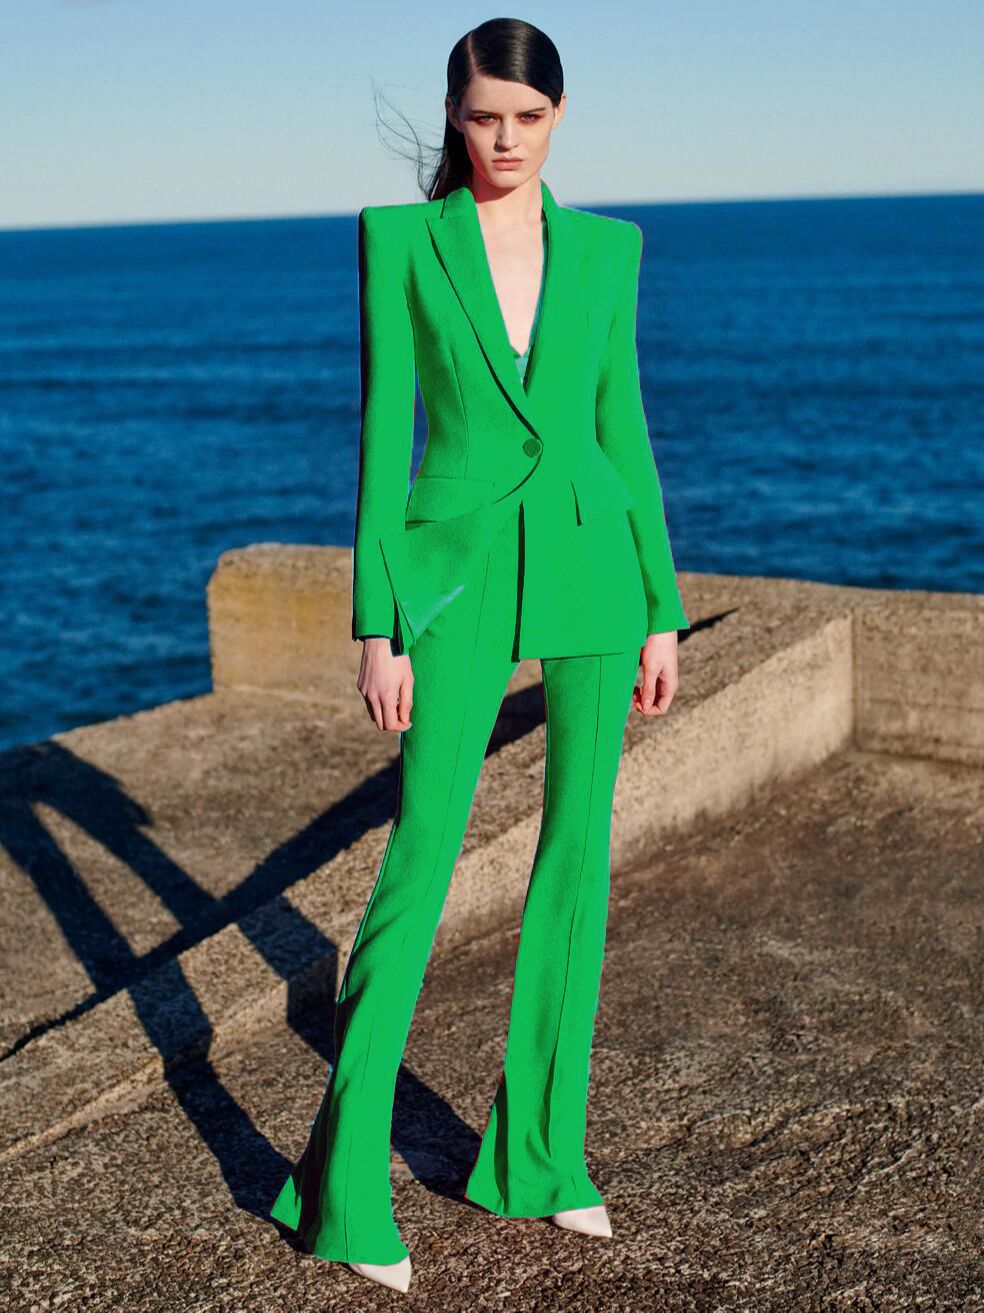 Runway Designer Suit Set Women's Single Button Blazer Flare Pants Suit